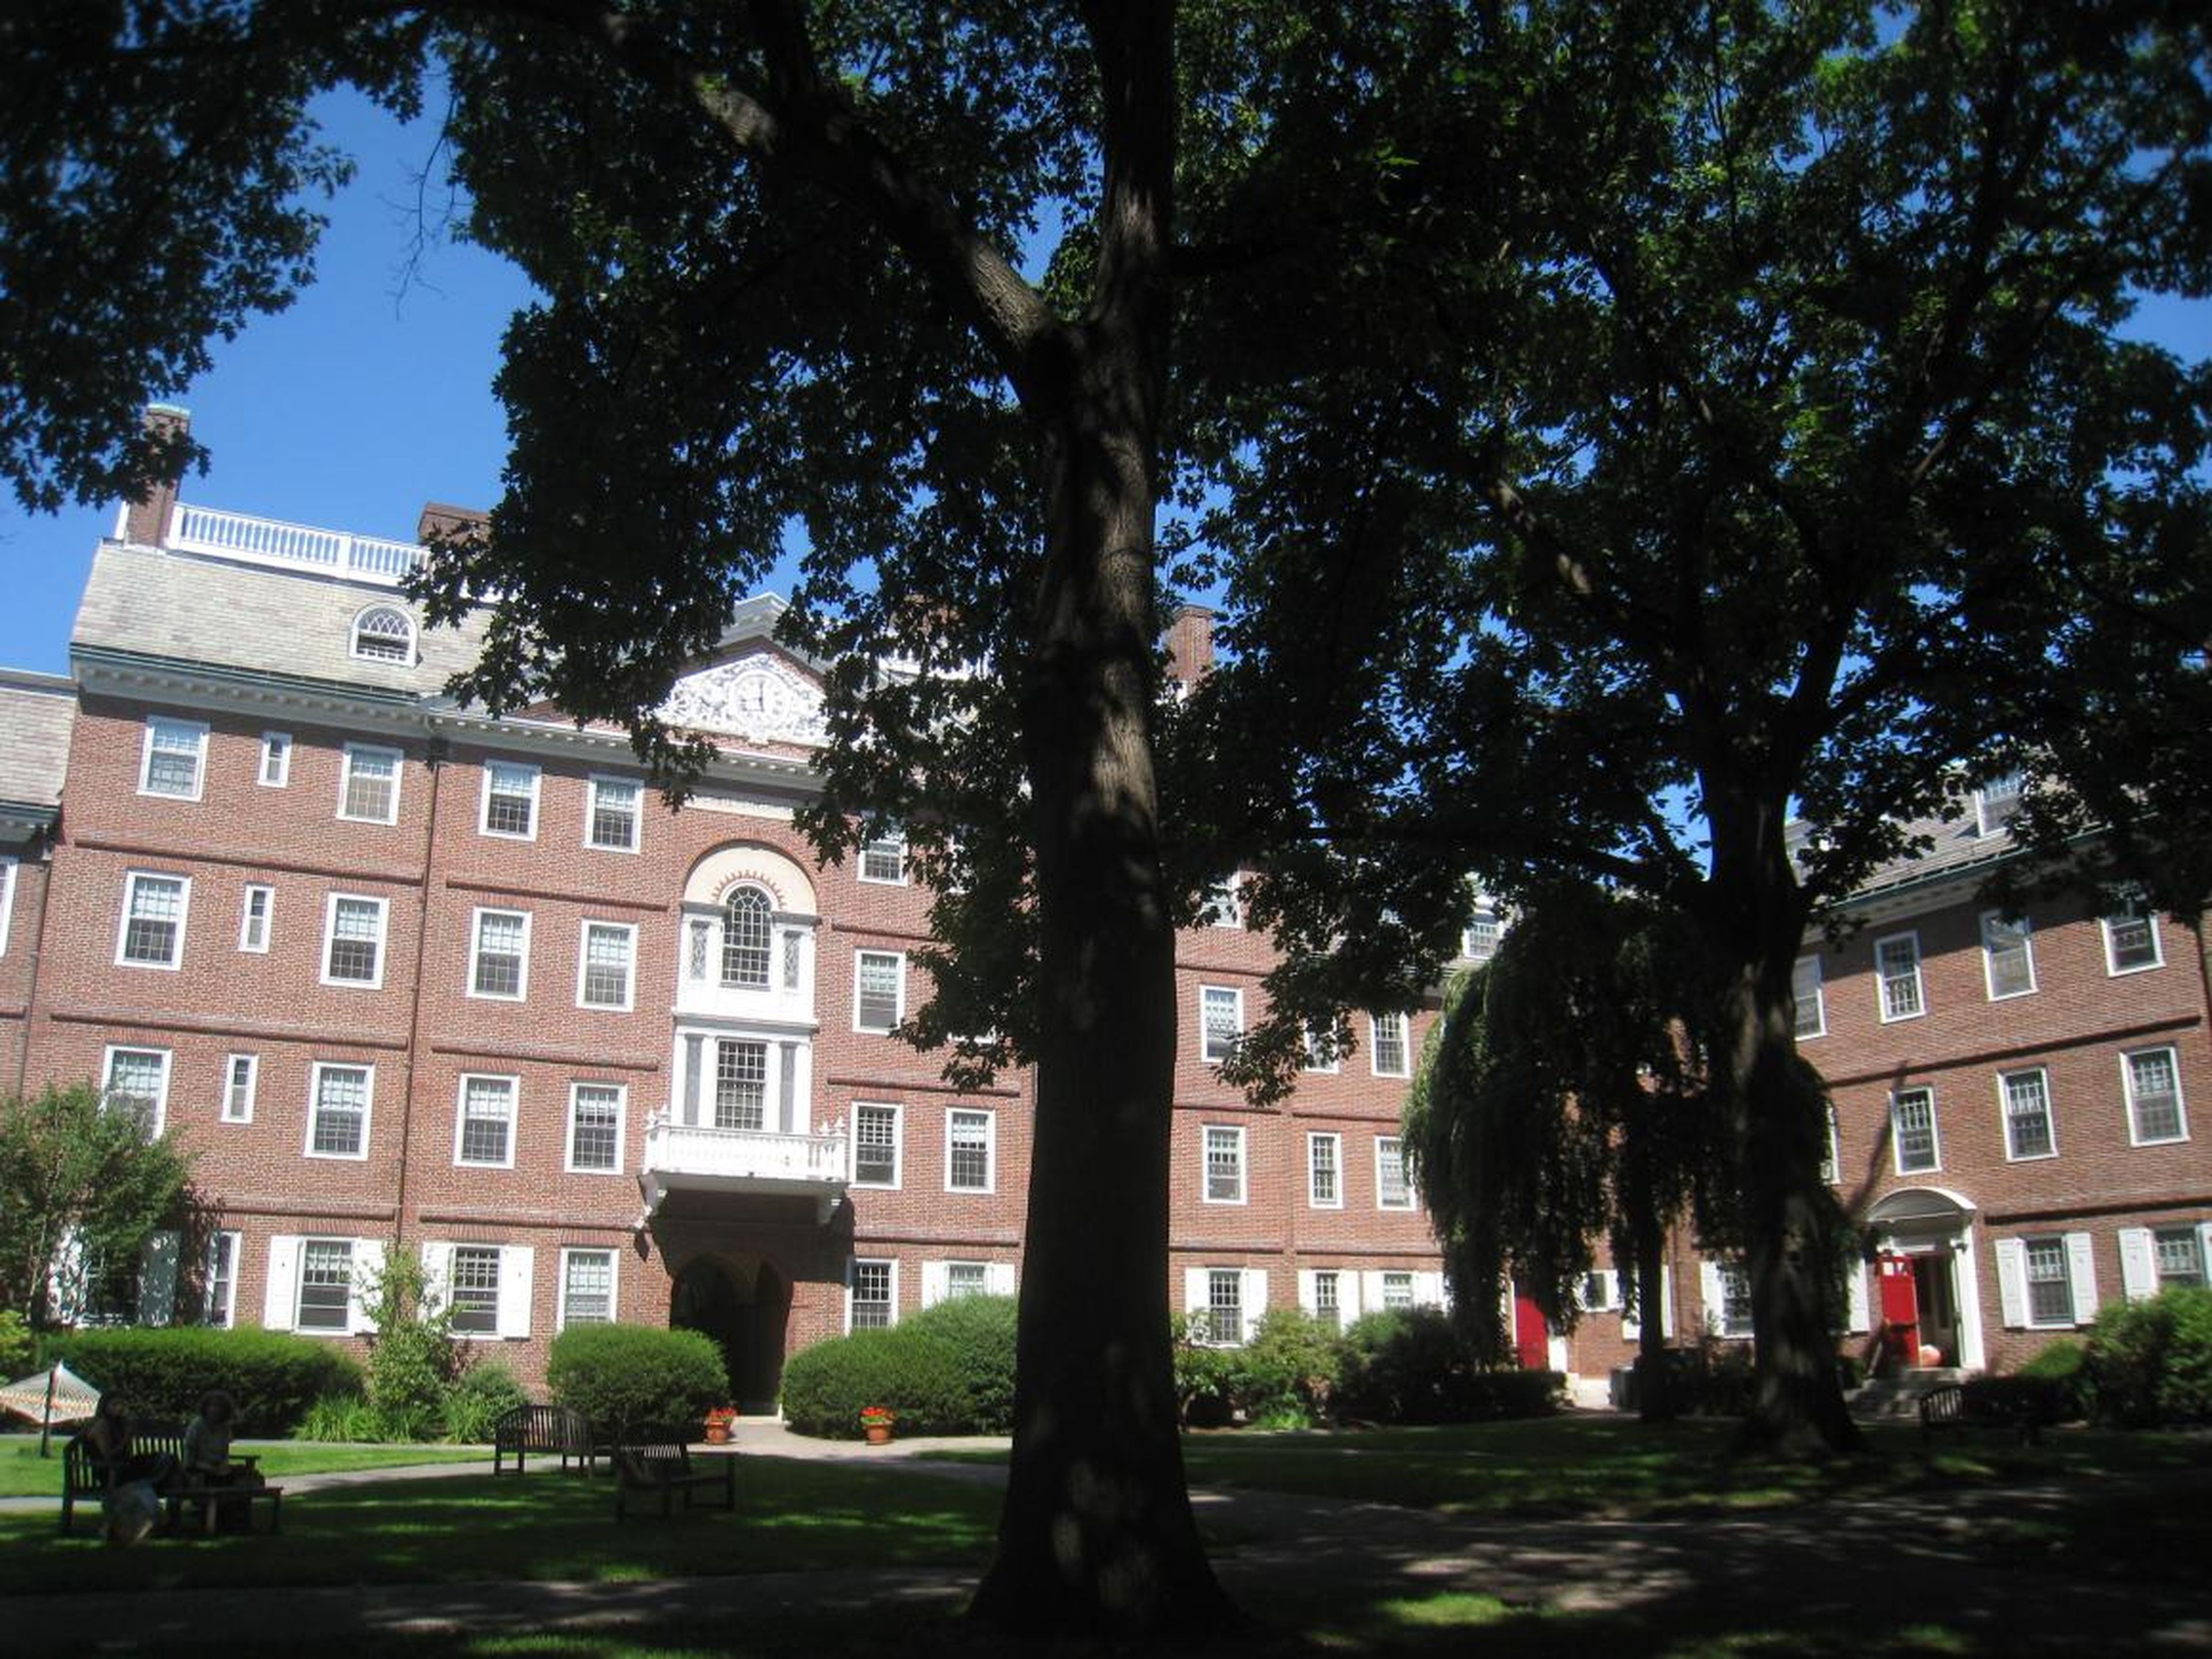 Facebook tuvo sus inicio en la residencia universitaria Kirkland House de Harvard.